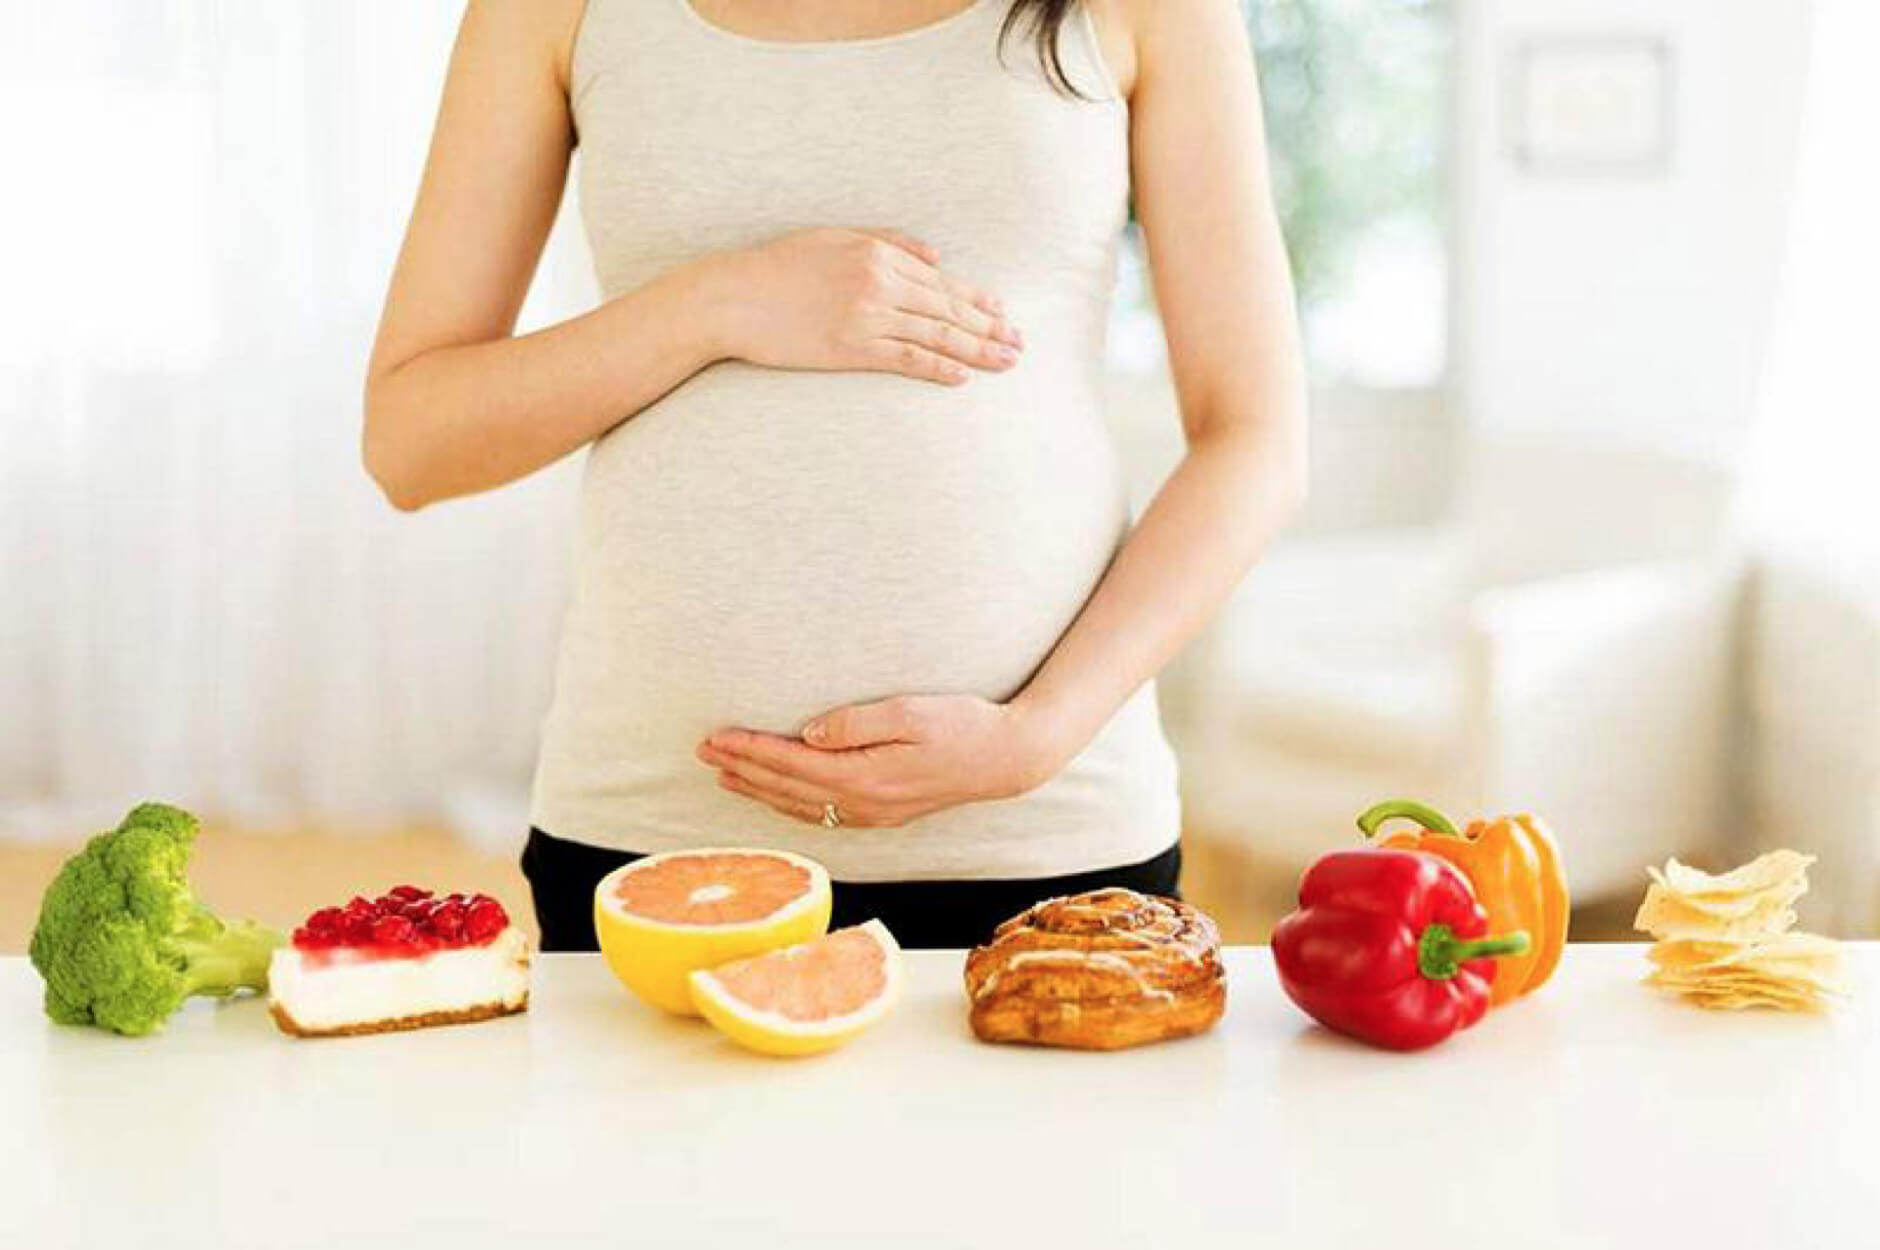 6 kinh nghiệm ăn uống giúp VÀO CON KHÔNG VÀO MẸ dành cho mẹ bầu - Ảnh 2